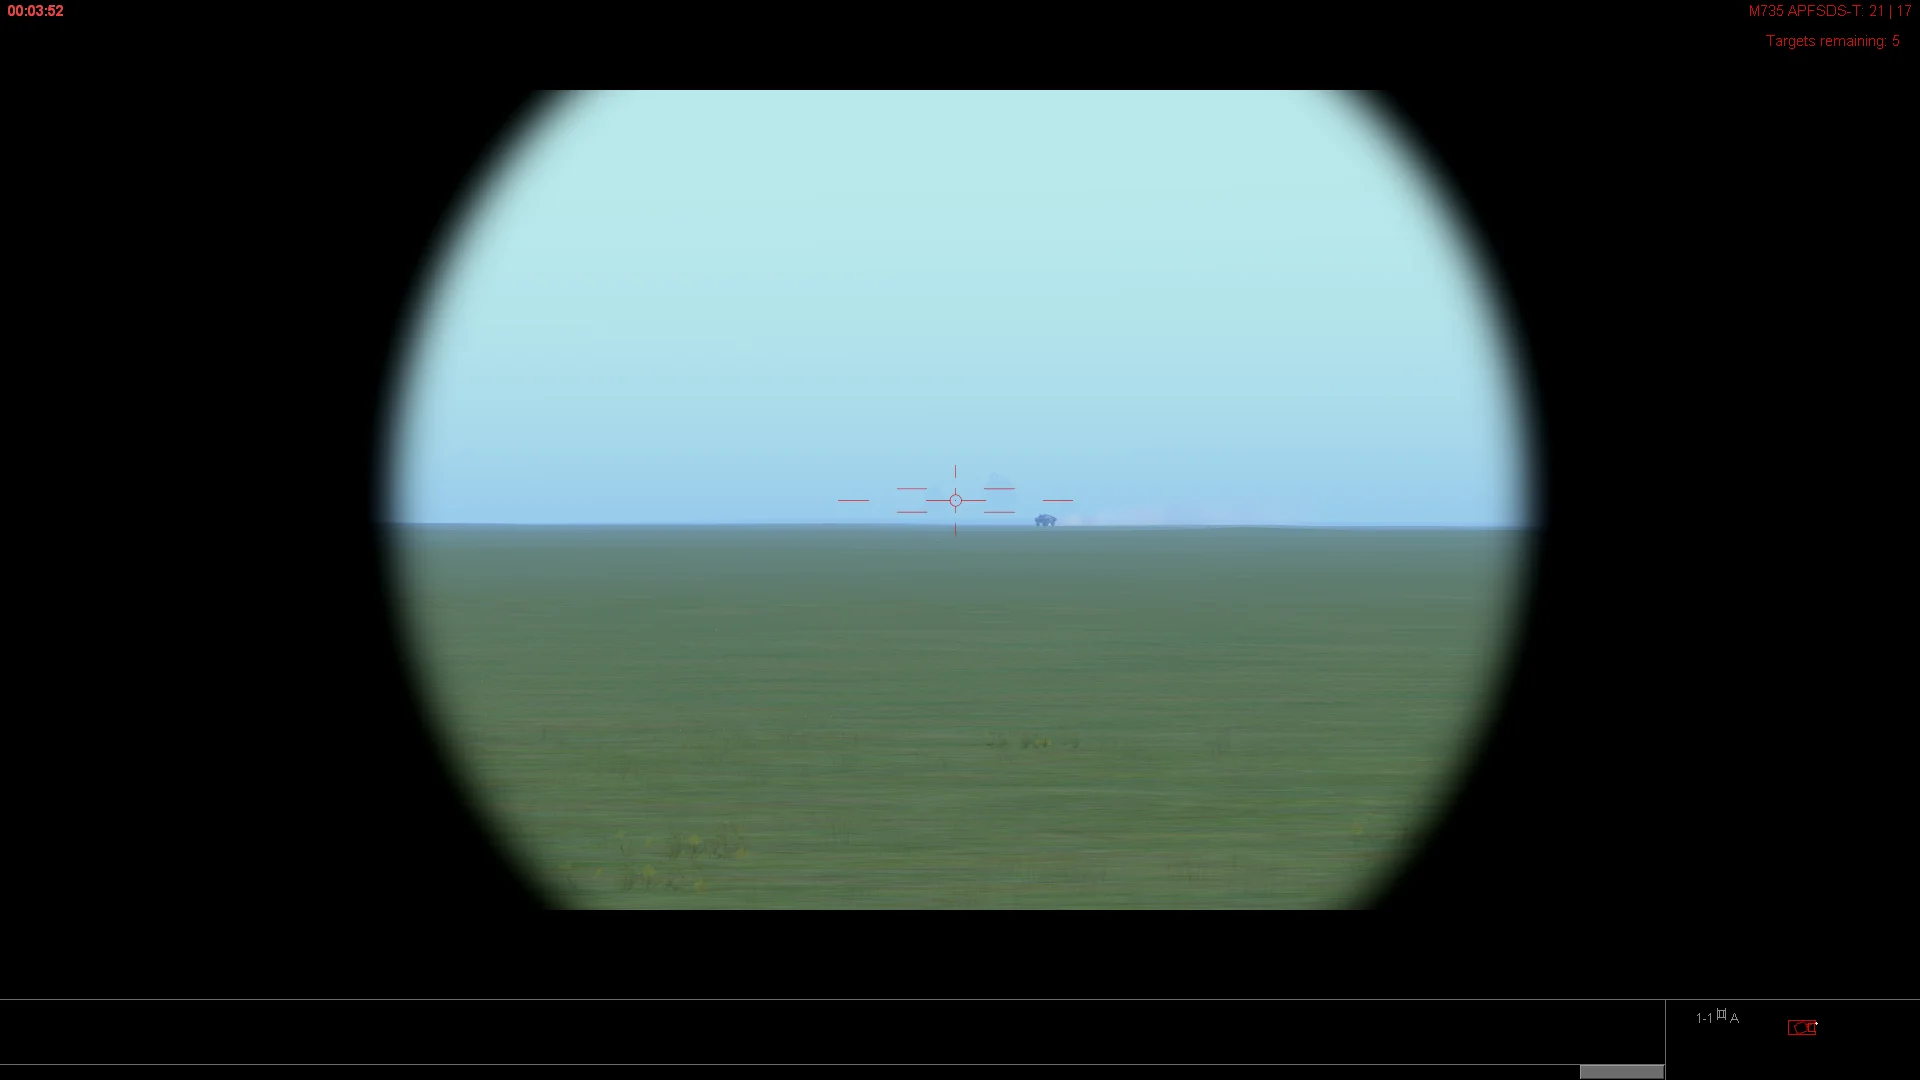 炮手潜望镜看到的景象——游戏甚至做出了指挥官和炮手共用潜望镜的联动效果